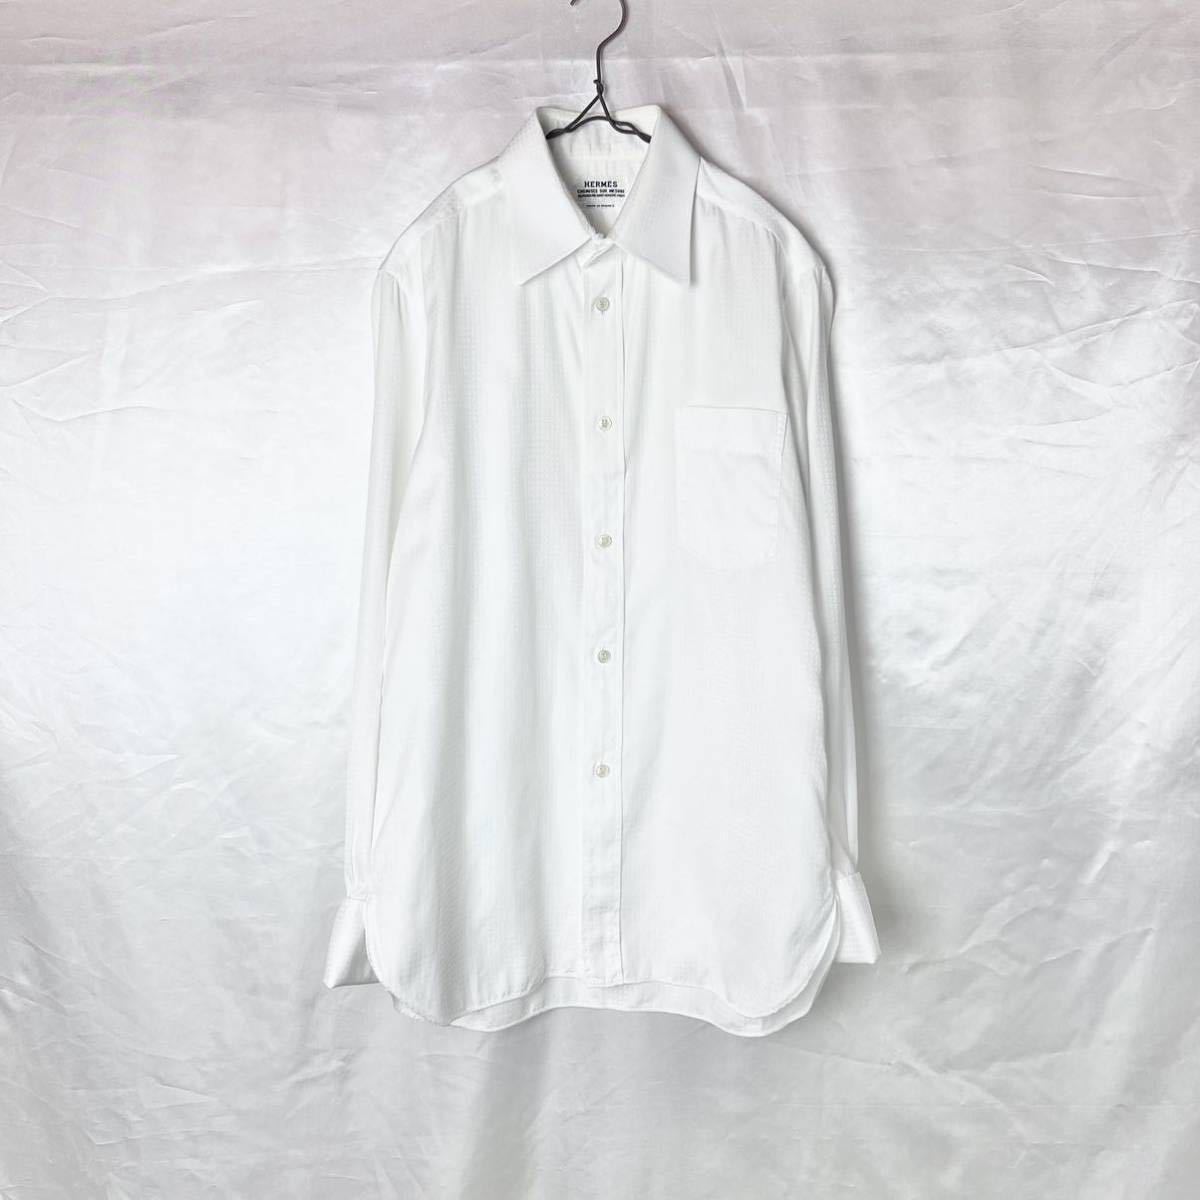 特別セーフ Cotton Bespoke homme Hermes Dress 90s メンズ ビンテージ ヴィンテージ シャツ ドレス コットン 綿 ビスポーク エルメス Shirt Mサイズ